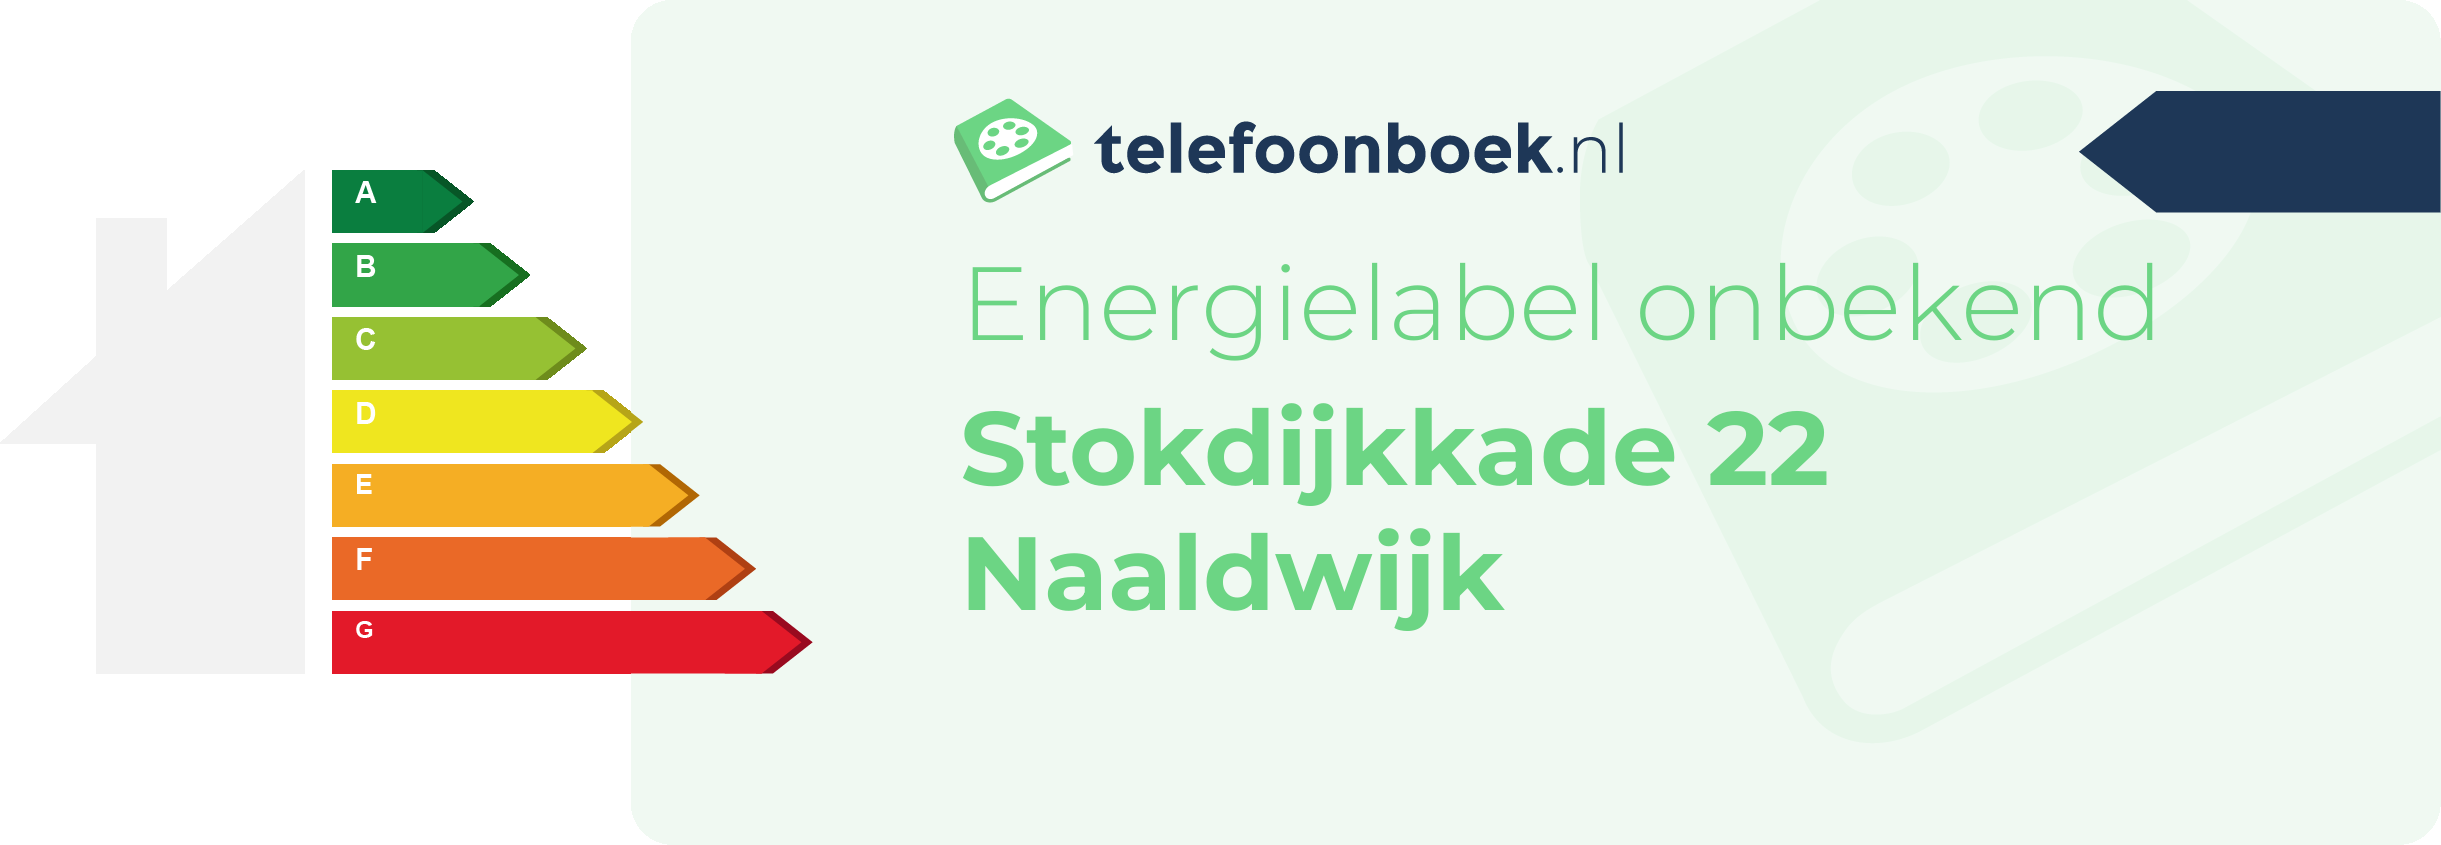 Energielabel Stokdijkkade 22 Naaldwijk